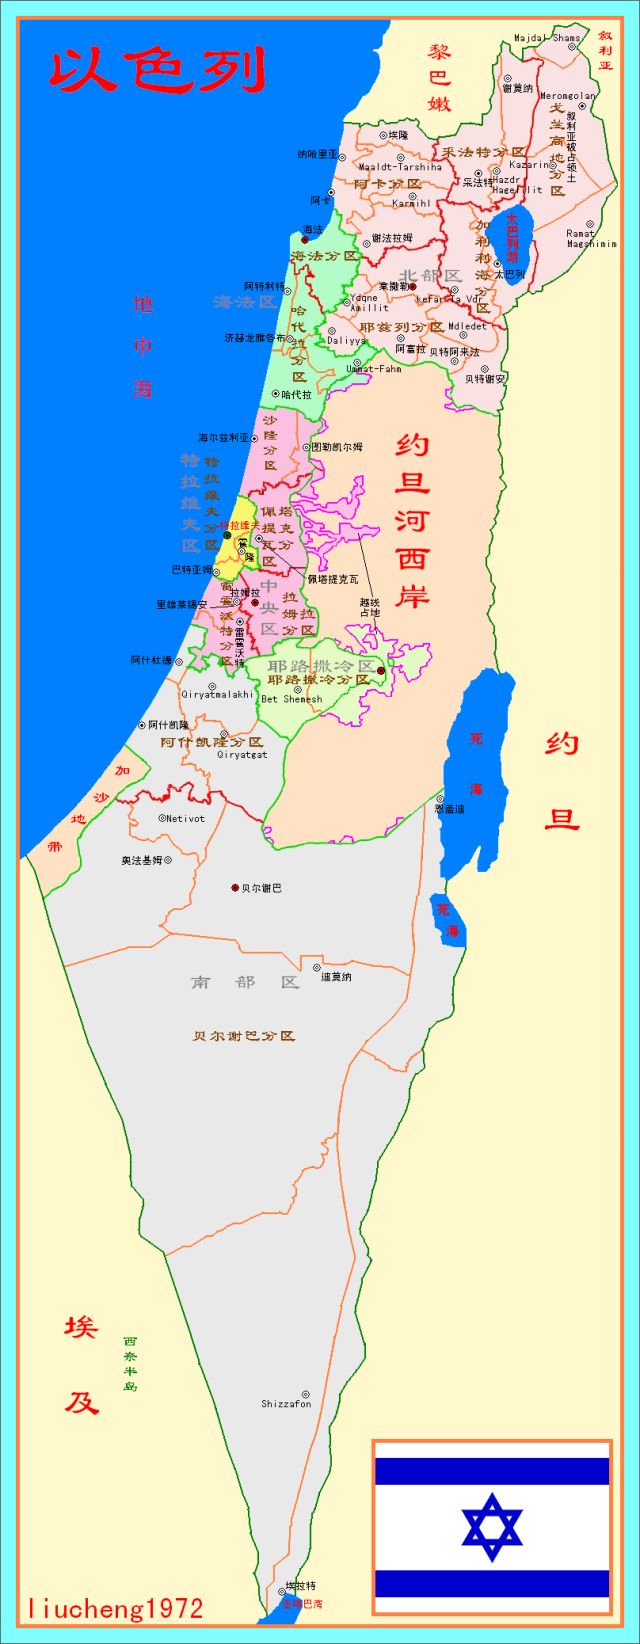 在中国出版的以色列地图上,格兰高地清晰的标注着——"叙利亚被占领土